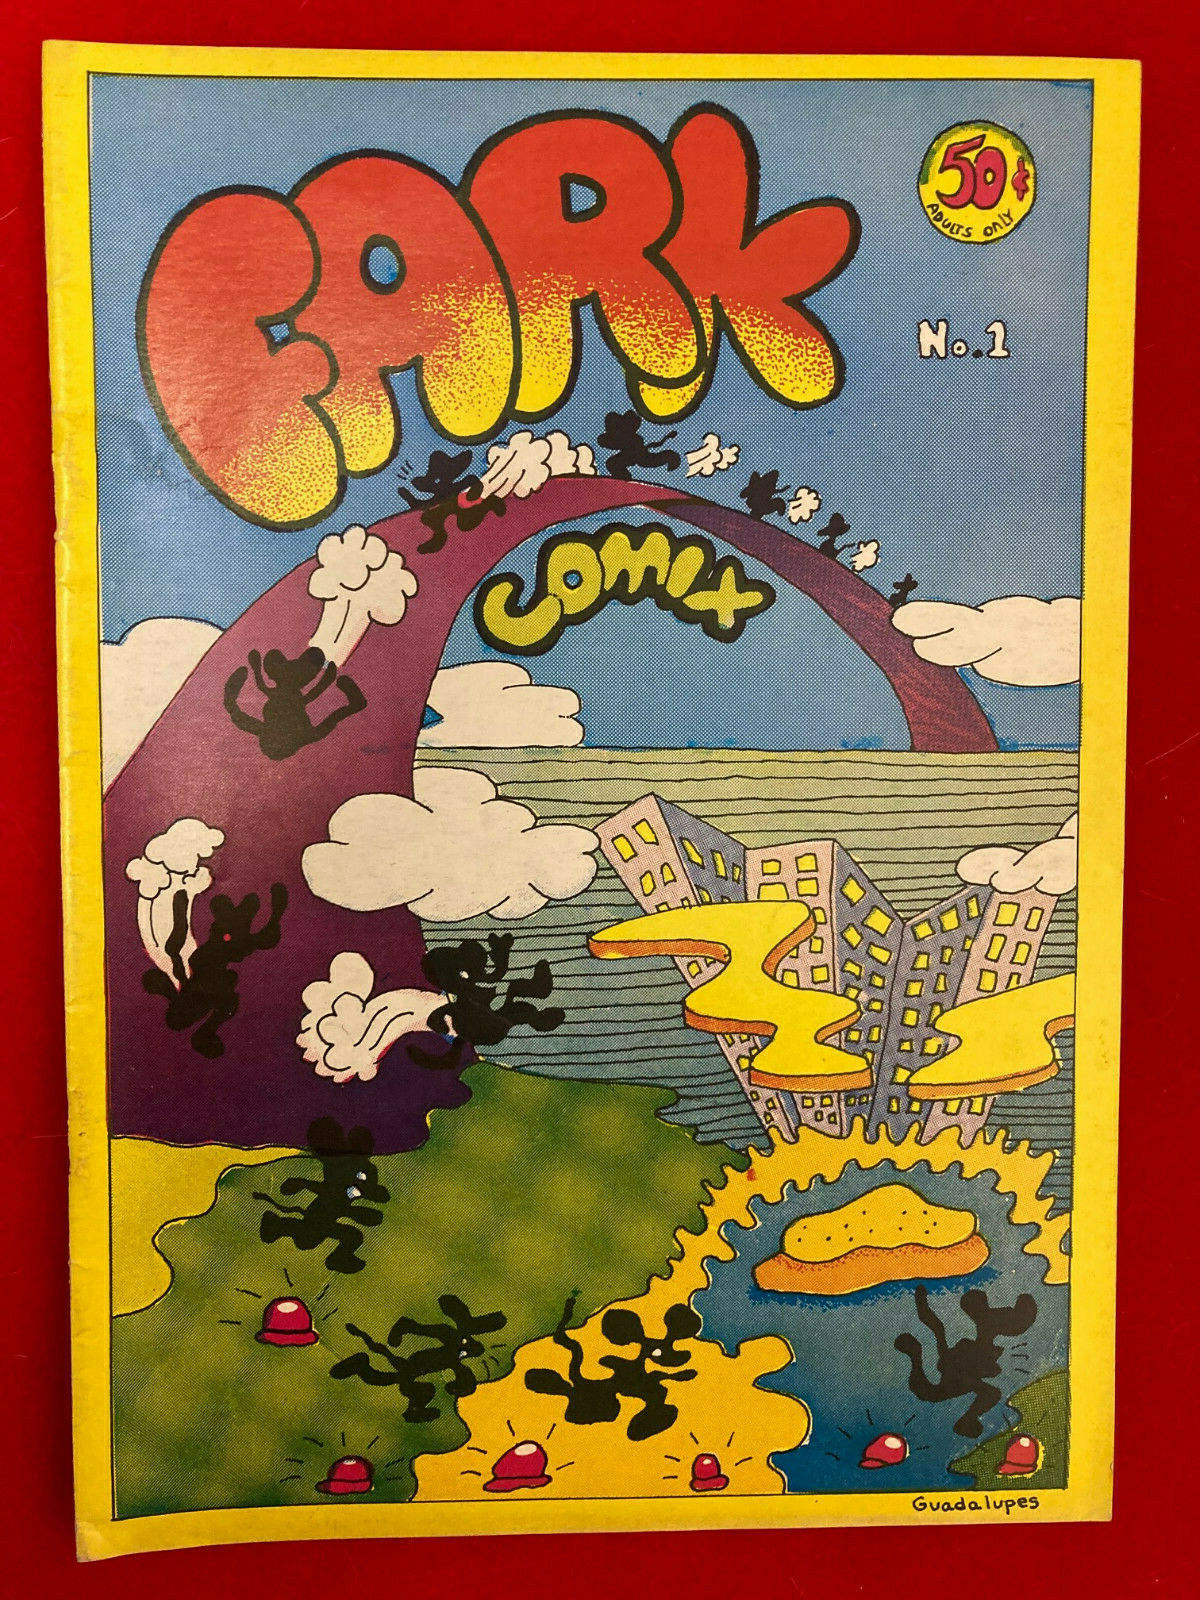 1969 Aardvark Press FARK COMIX #1 Underground Comic Book Guadalupes 50 cent RARE